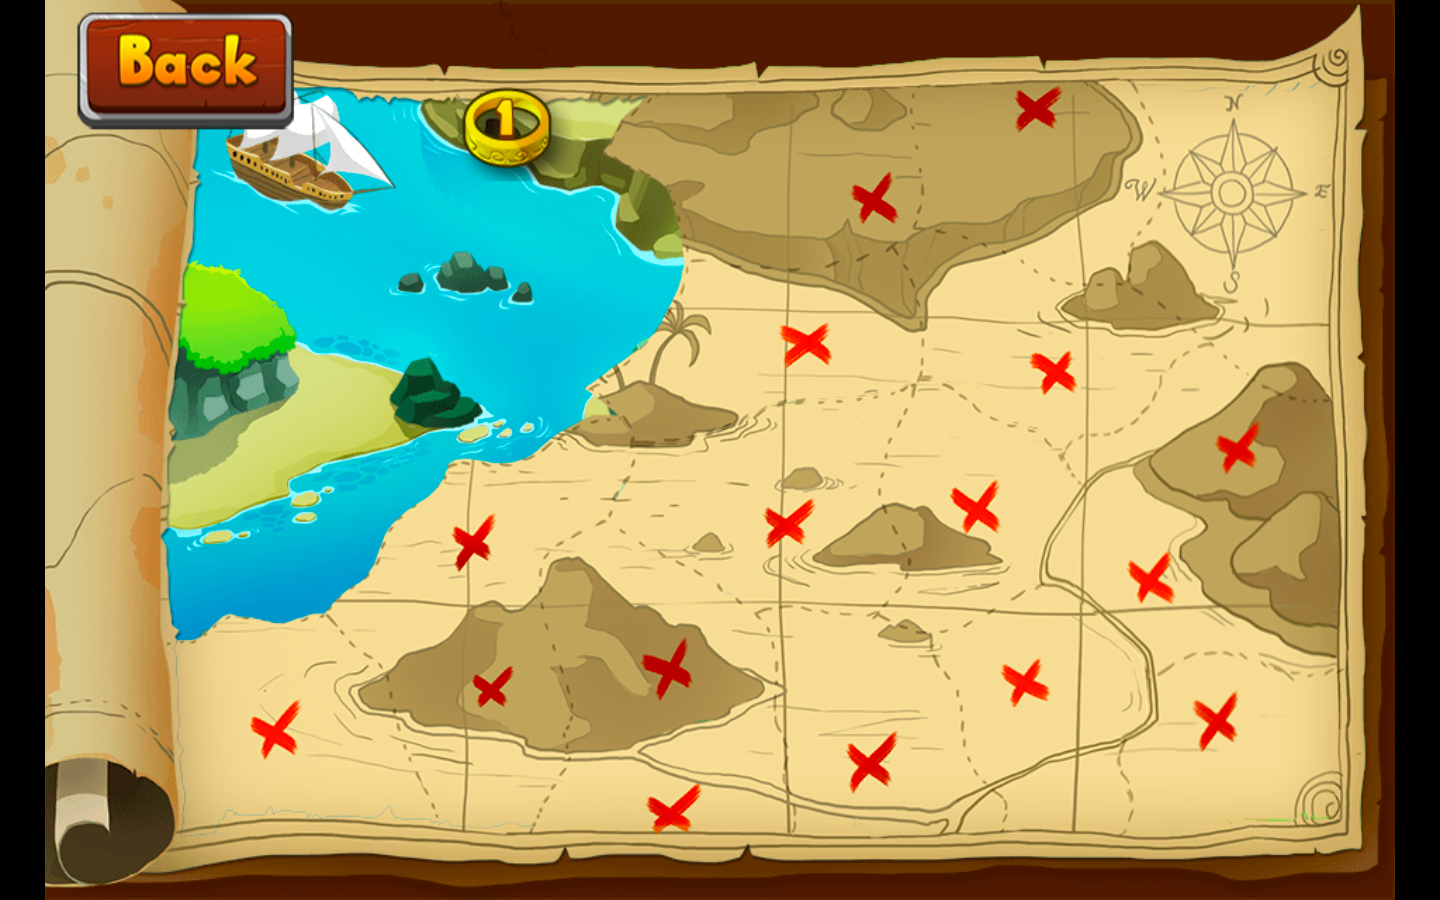 Sea Treasure игра. Сокровища мистического моря 3. Остров сокровищ игра. Карта сокровищ. Игры в контакте сокровища